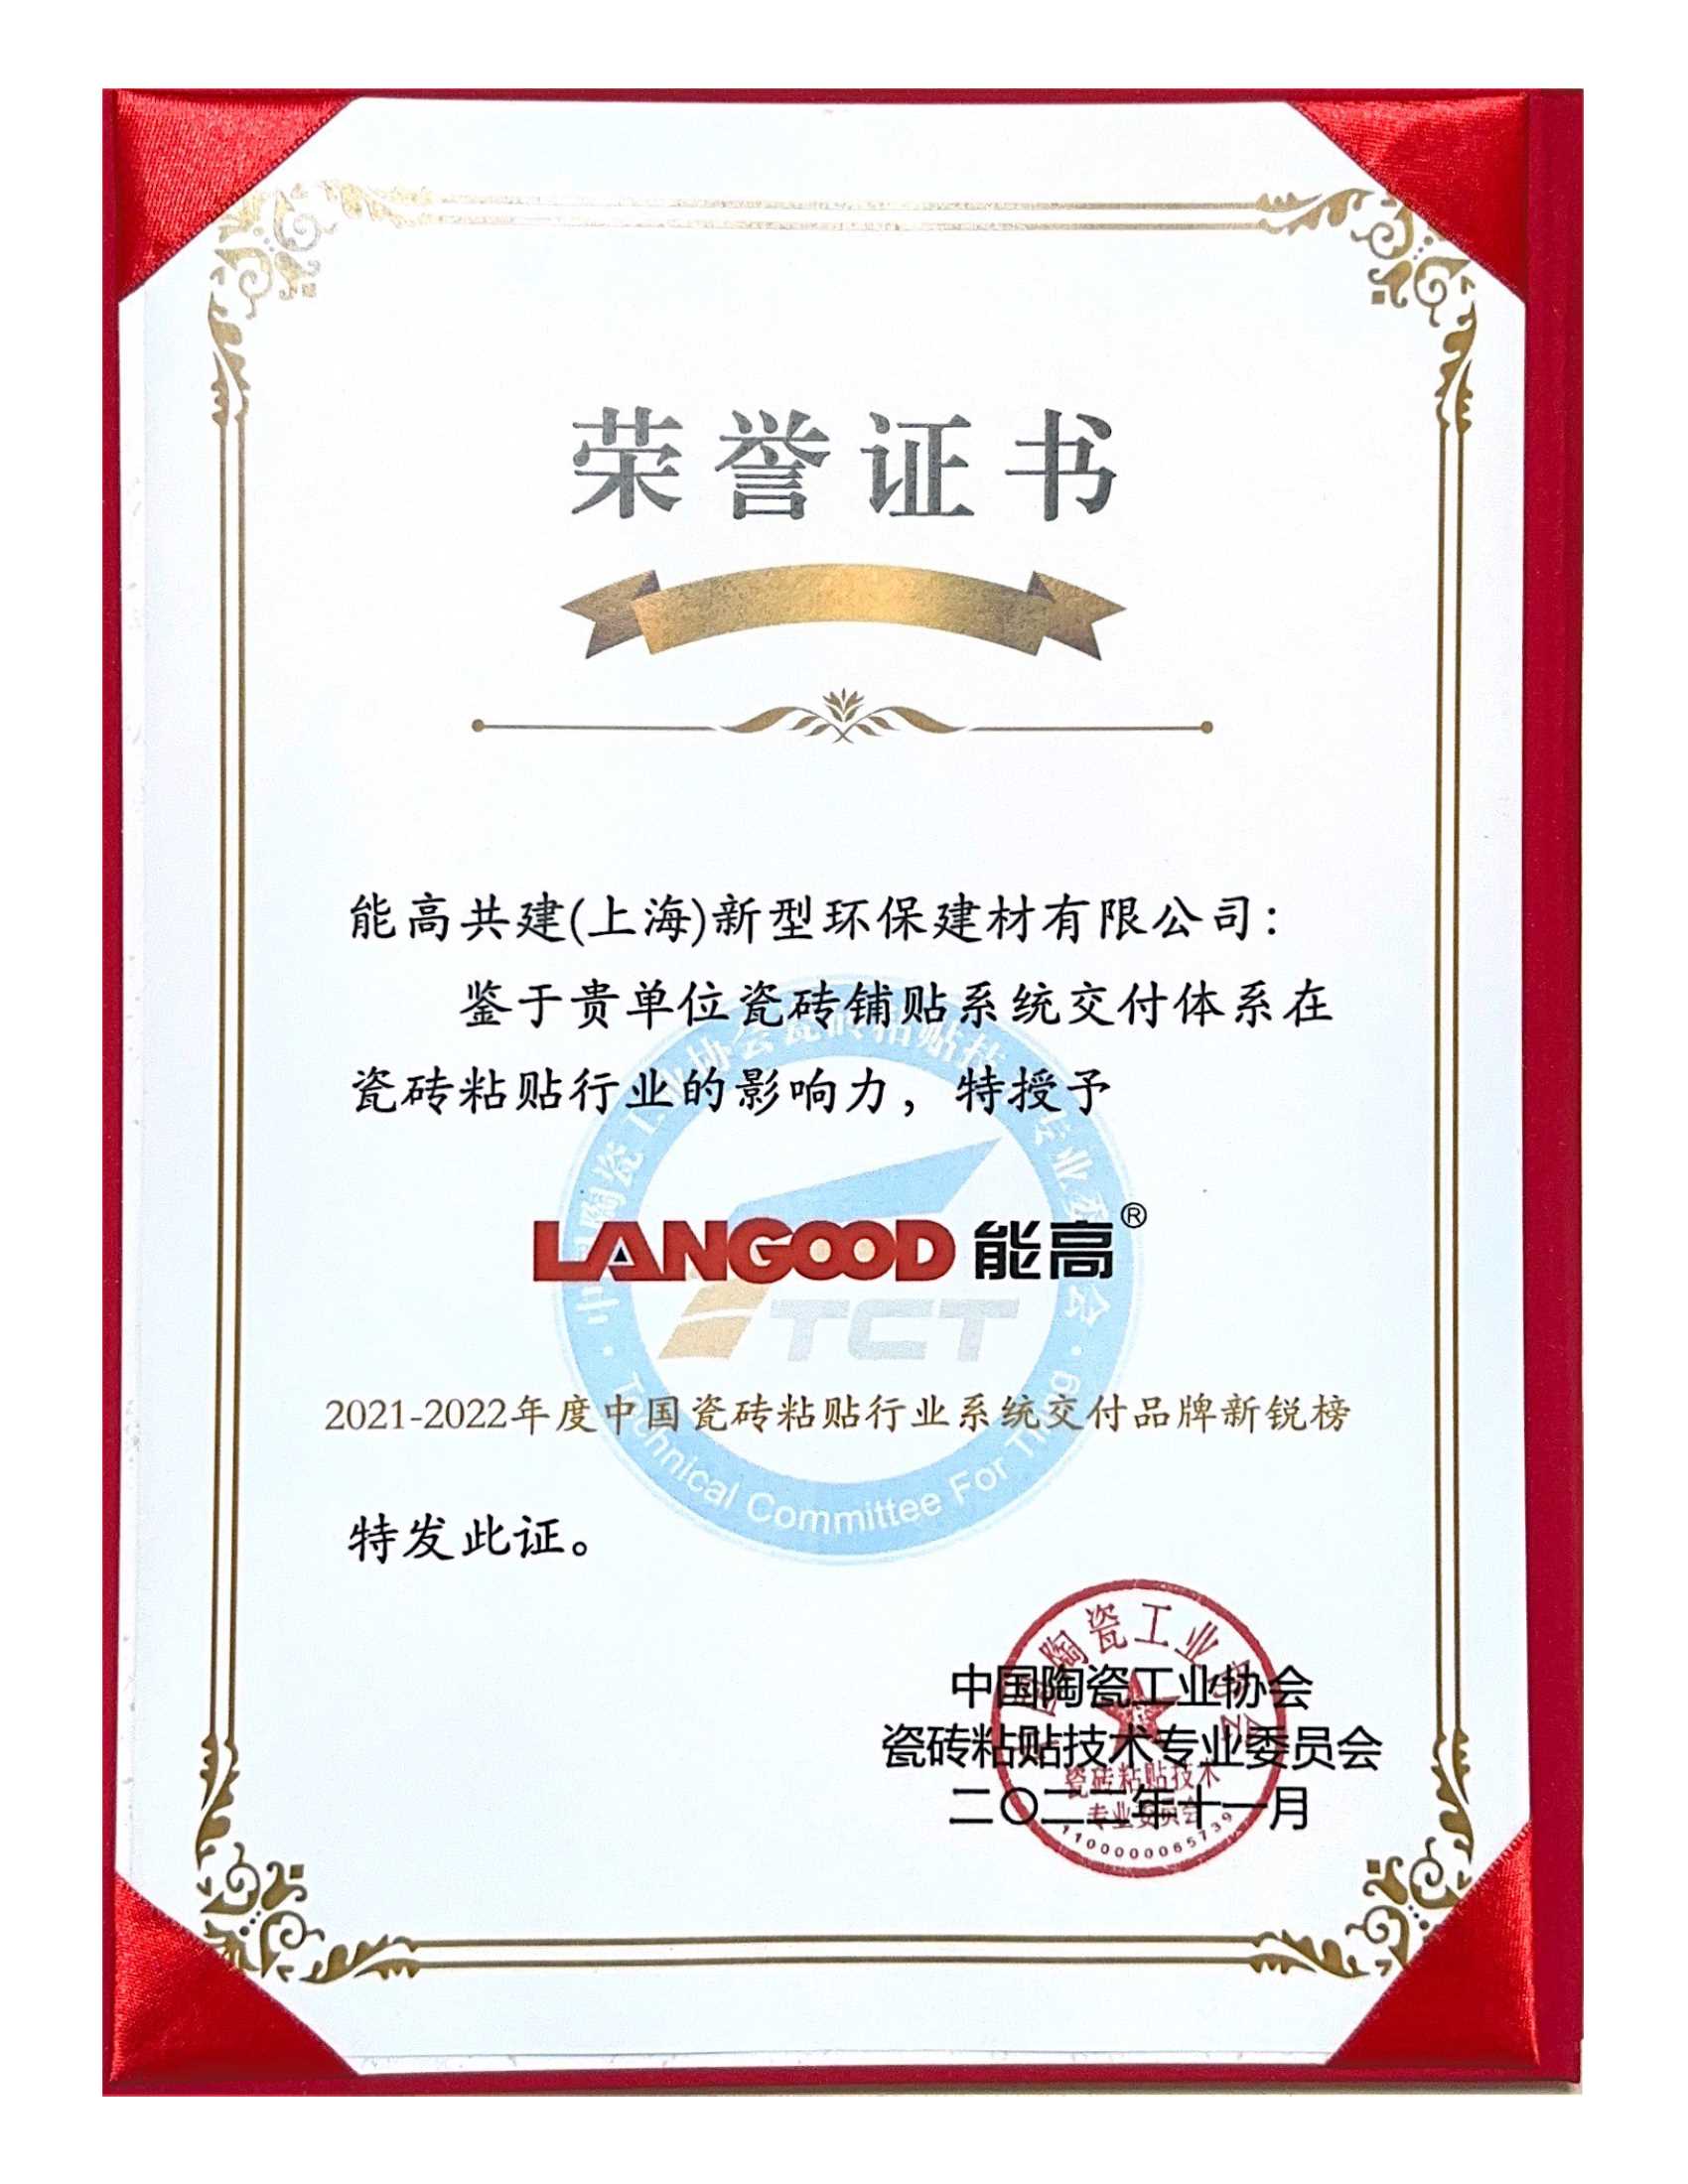 43-1、21-22年度中国瓷砖粘贴行业系统交付品牌新锐榜-证书.Jpeg